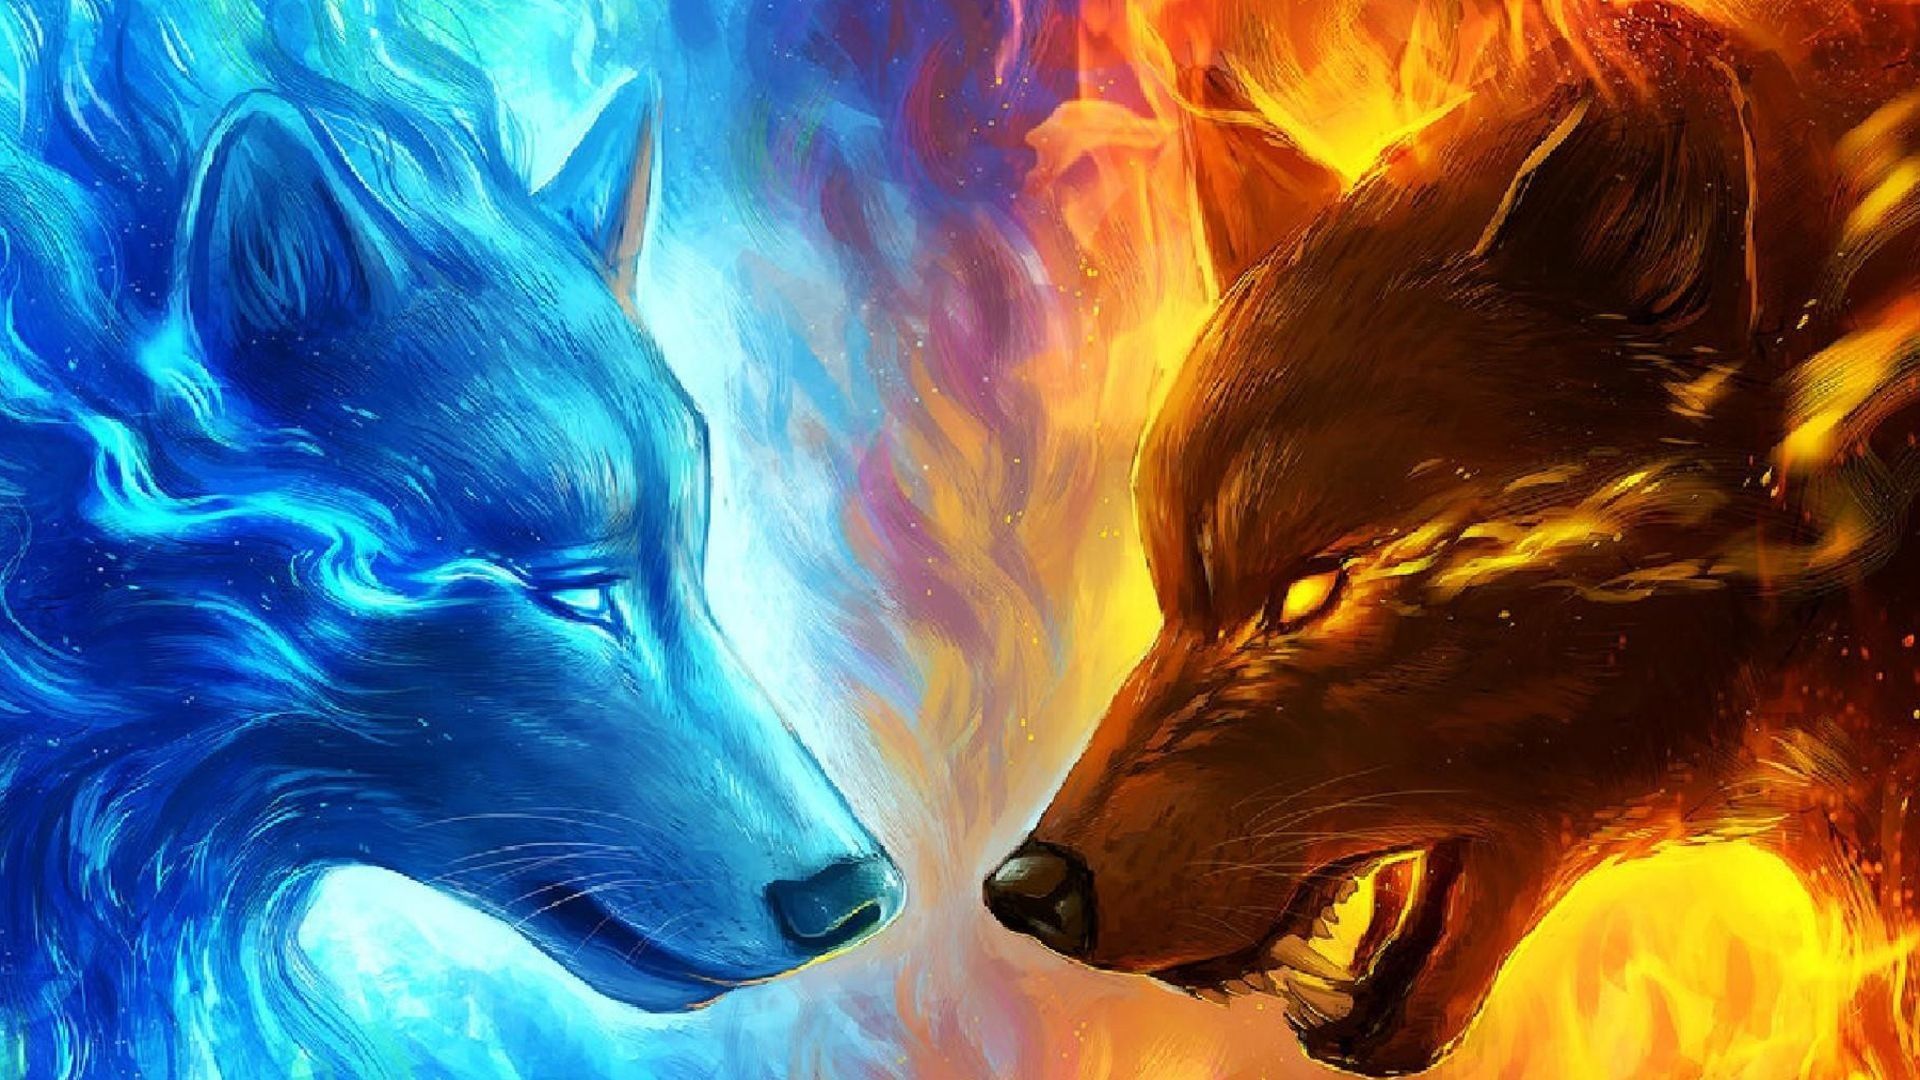 Inspirational Fire Wolf Wallpaper. Wolf wallpaper, Ice wolf wallpaper, Fantasy wolf